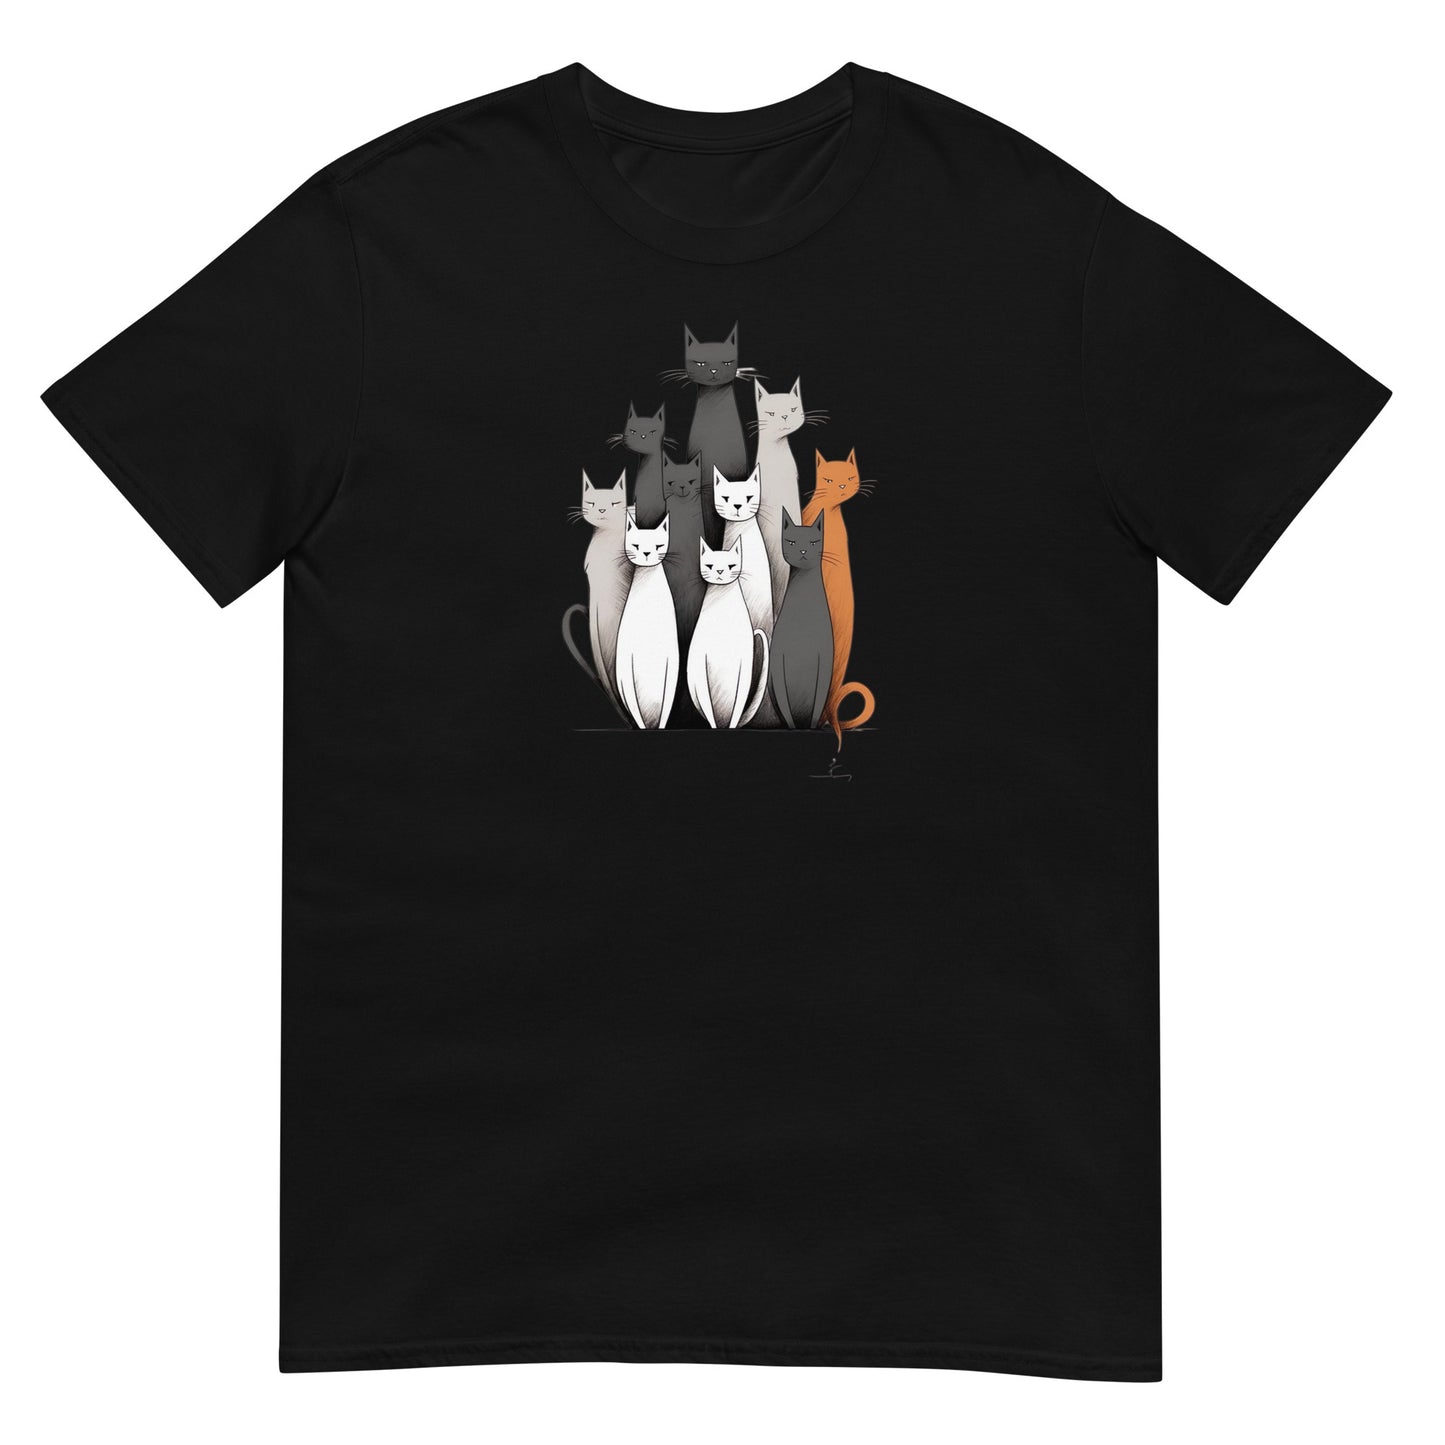 Unisex marškinėliai: katinai